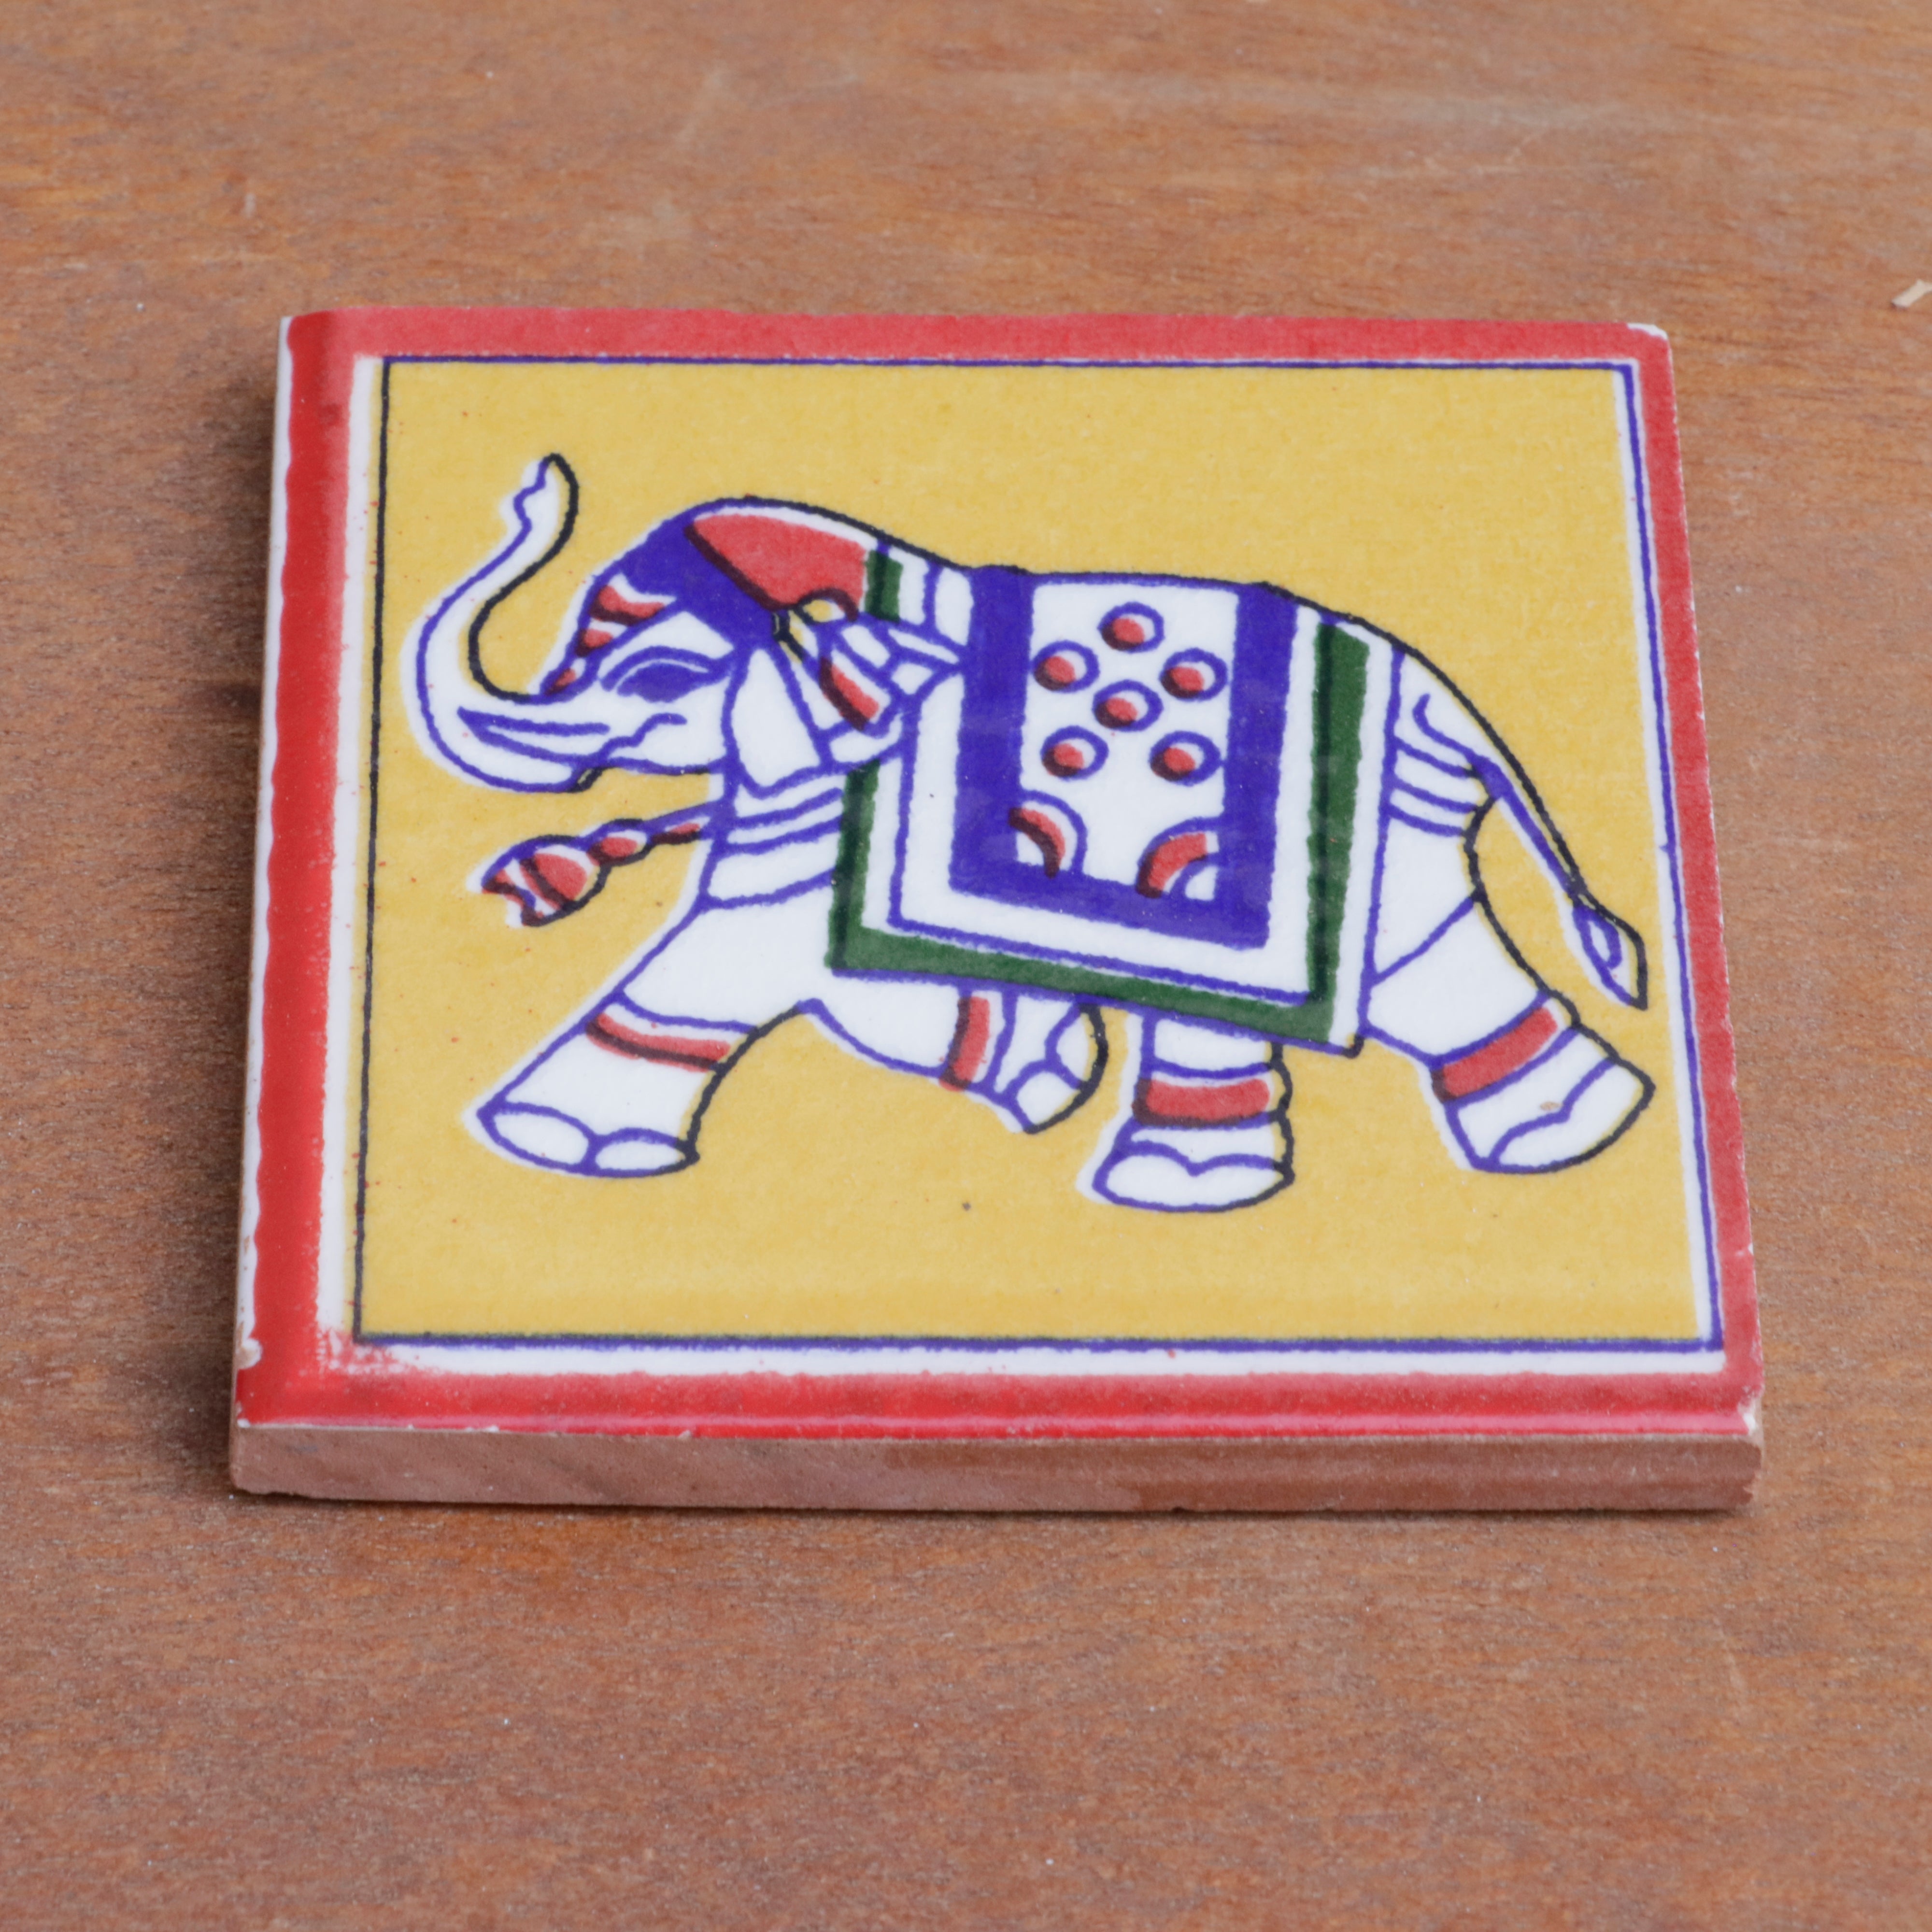 Elegant Royal Finished Elephant Designed Ceramic Square Tile set of 2 Ceramic Tile